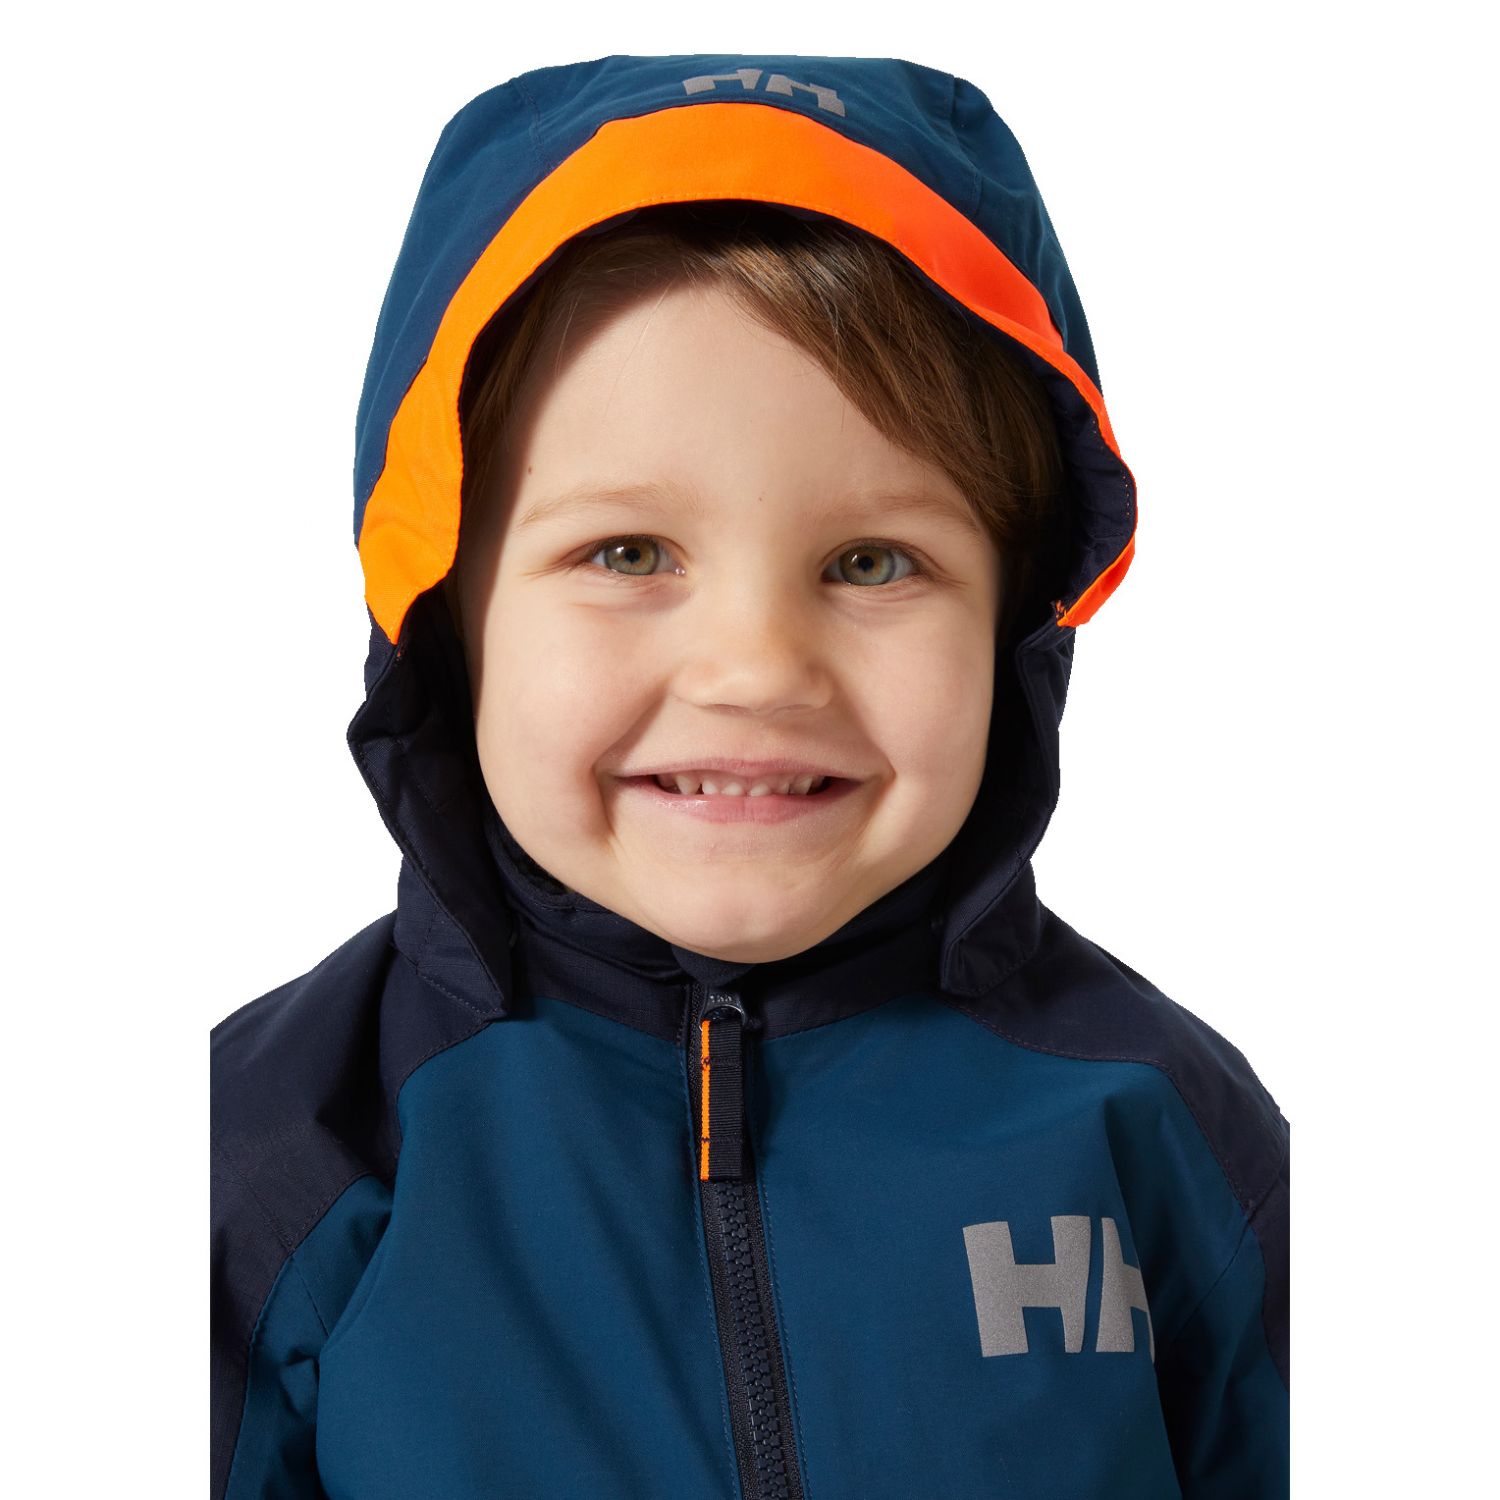 Helly Hansen K Legend 2.0 Ins, ski-jas, kinderen, donkerblauw